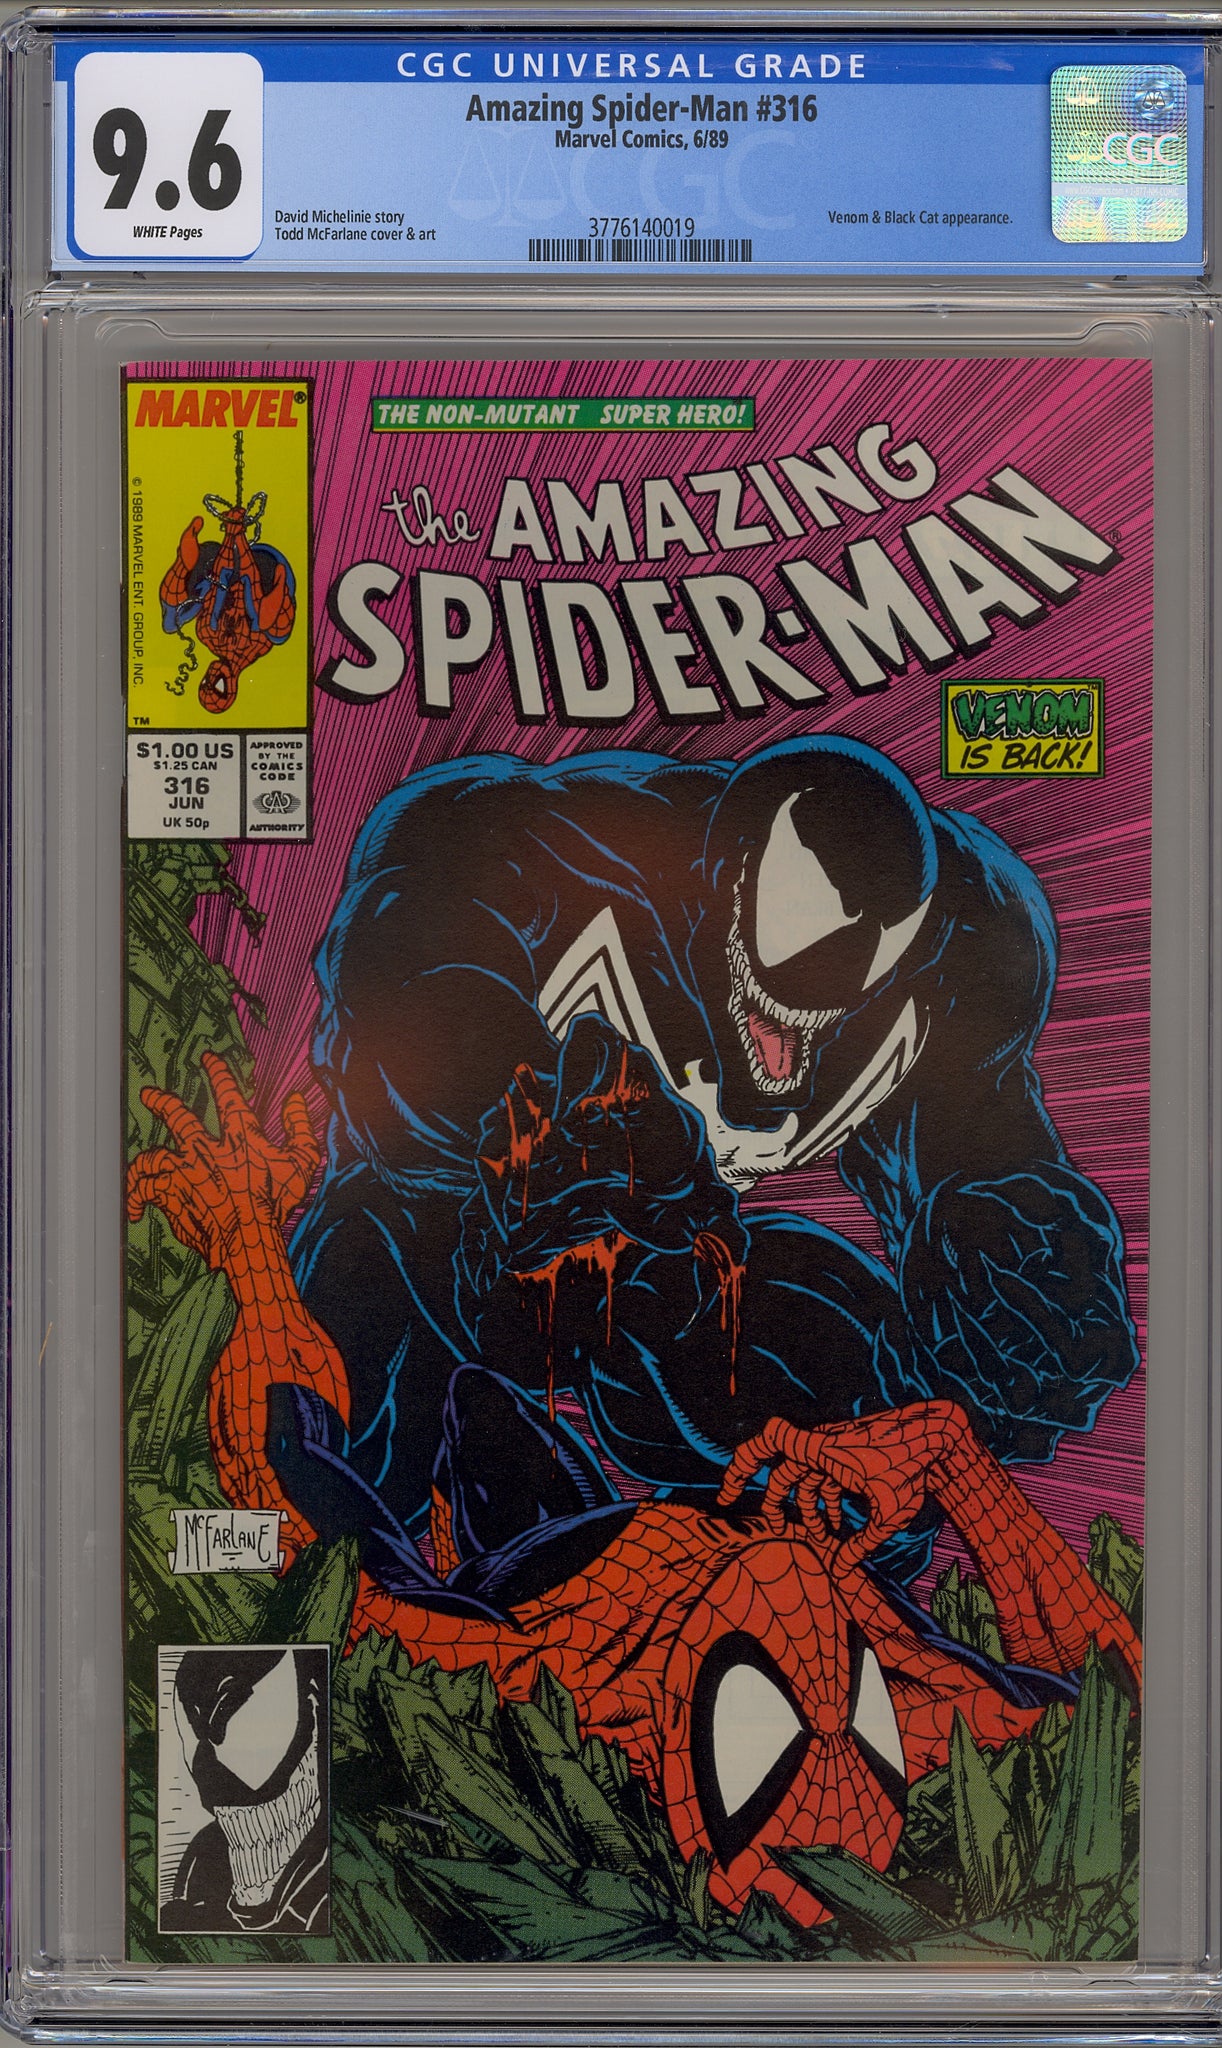 Amazing Spider-Man #316 (1989) Venom